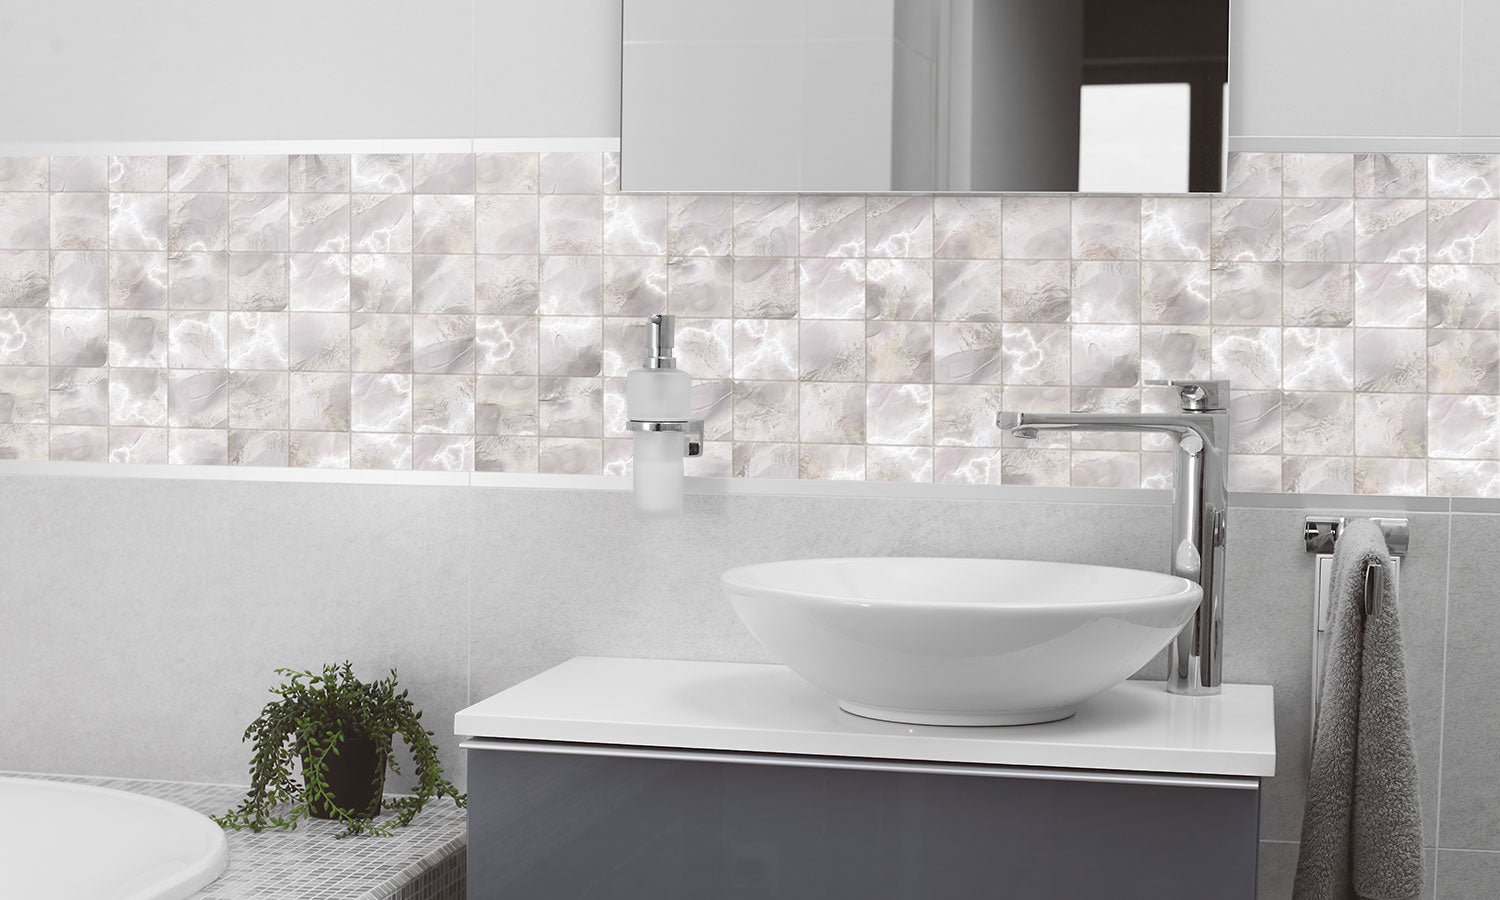 Paneli za kuhinje Marble tiles -  Stakleni / PVC ploče / Pleksiglas -  sa printom za kuhinju, Zidne obloge PKU098